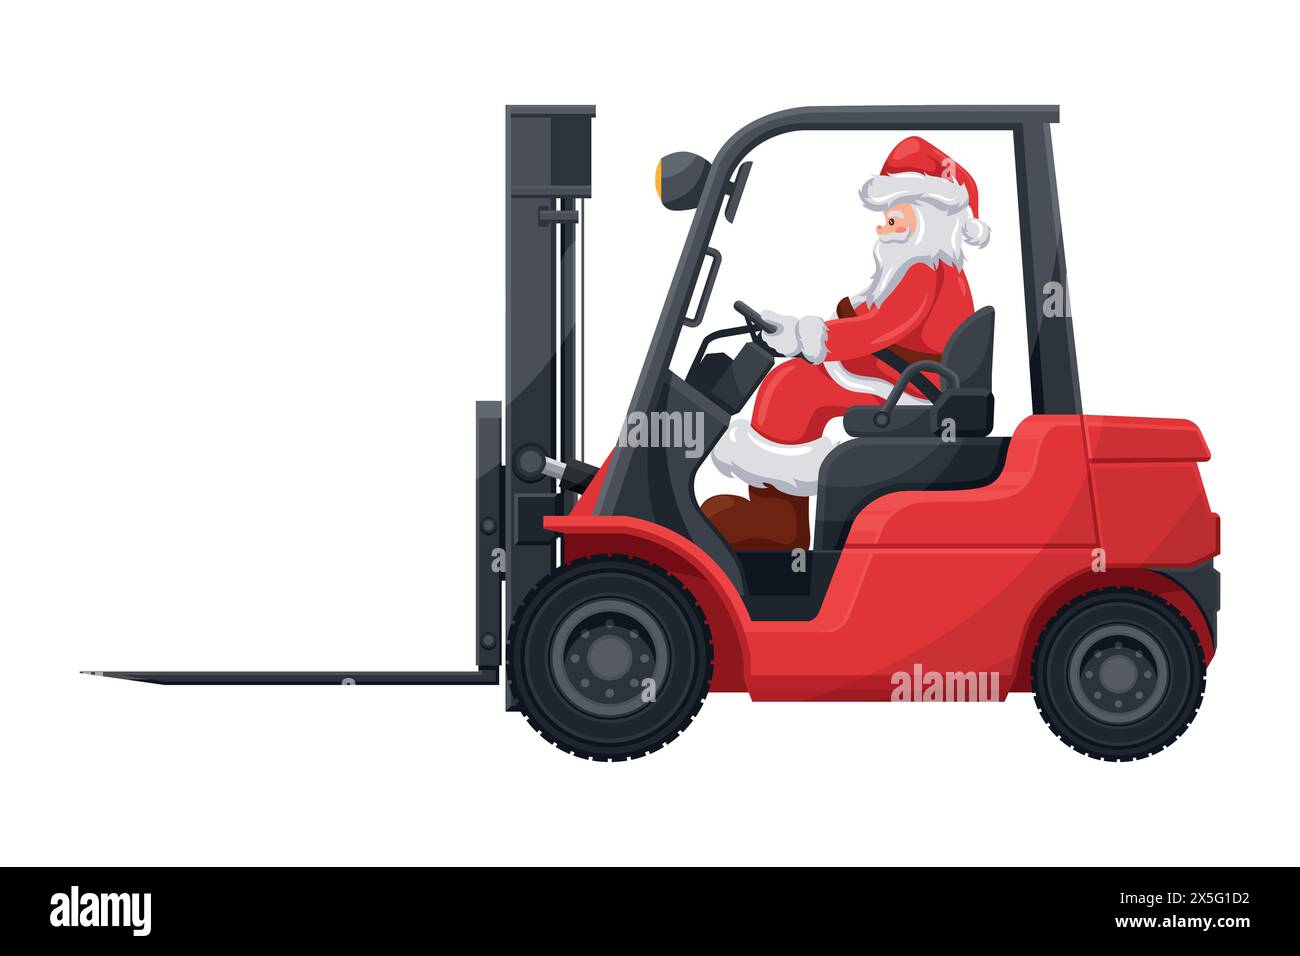 Weihnachtsmann fährt einen roten Gabelstapler. Sicherheit beim Umgang mit dem Gabelstapler. Weihnachtskampagne für Frachtlogistik und Versand von Waren mit hoher Nachfrage Stock Vektor